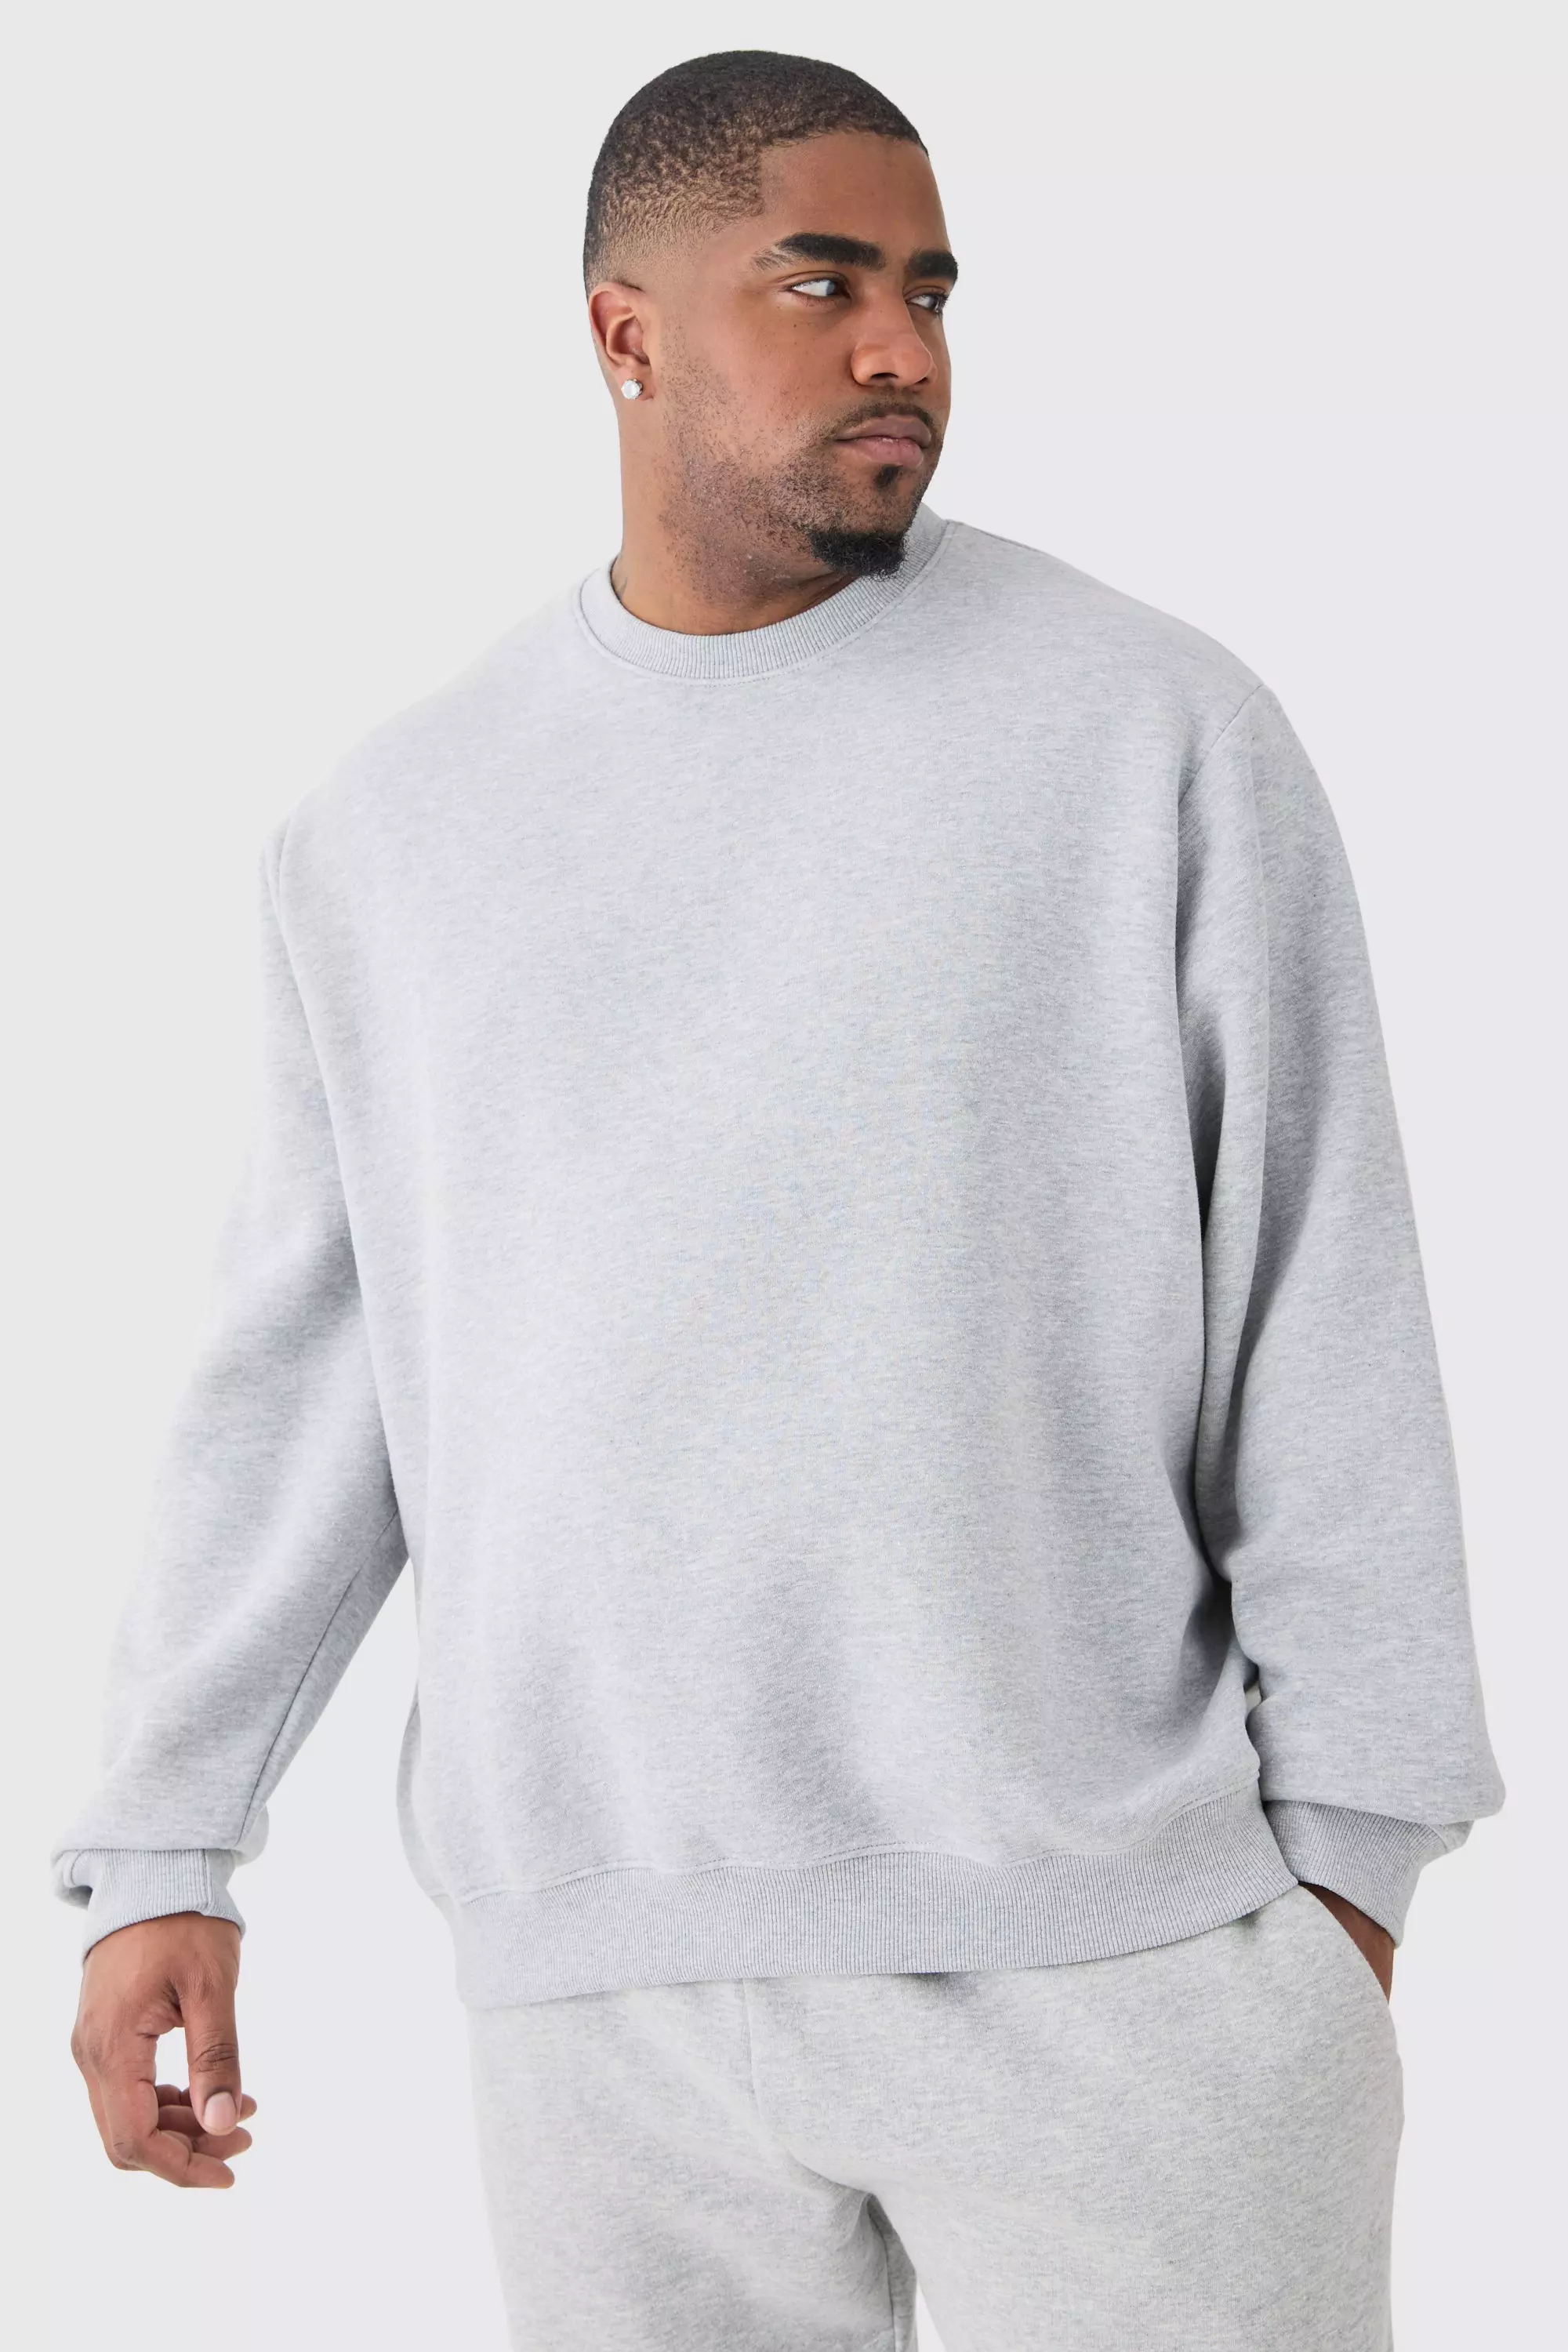 Plus Basic Sweatshirt In Grey Marl Grey marl